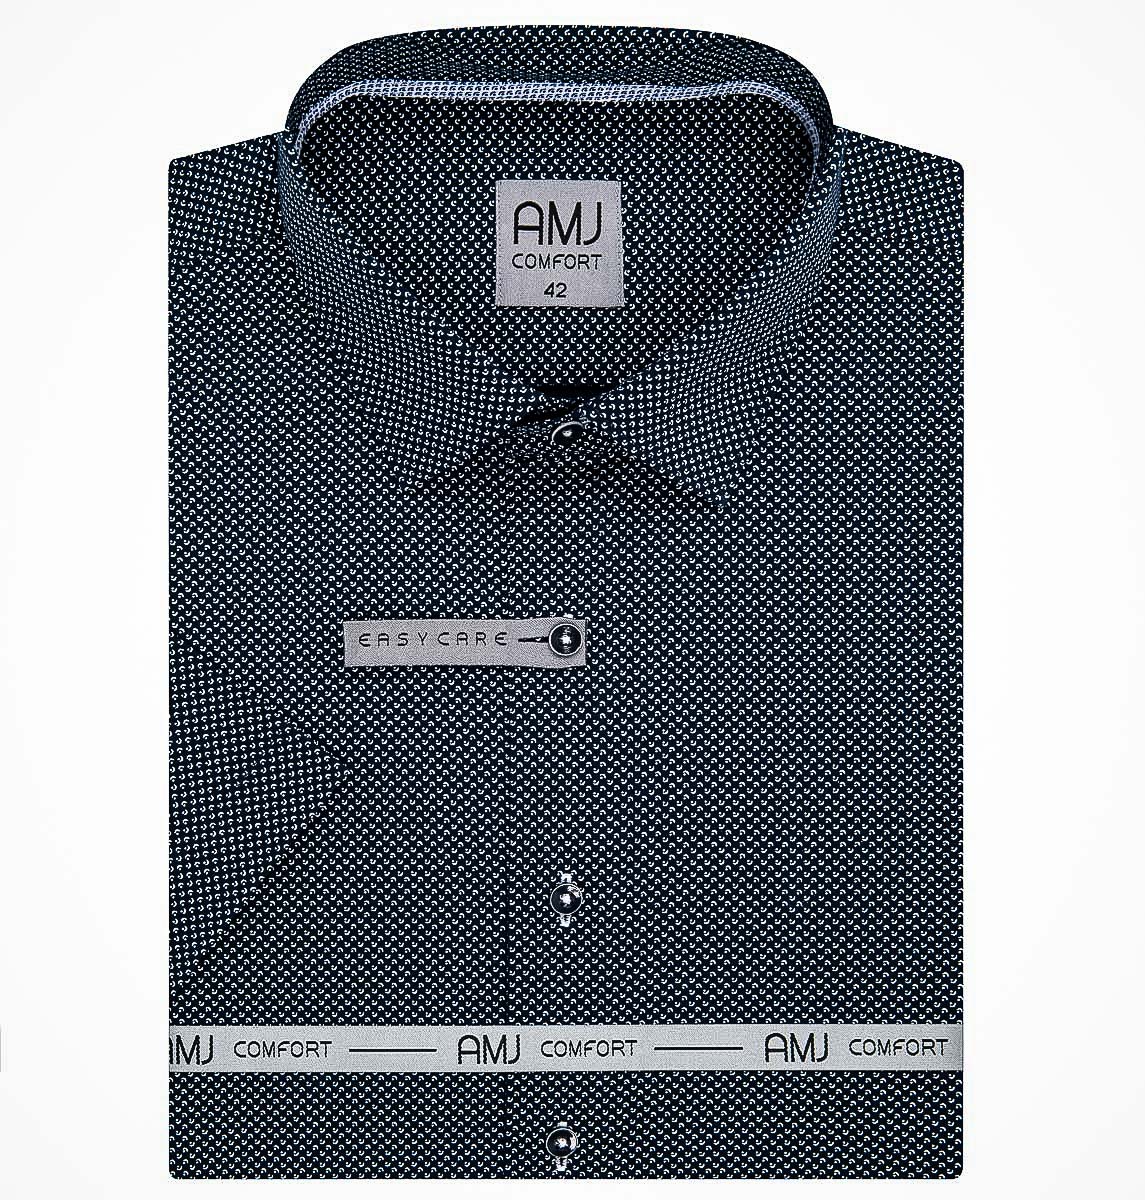 Pánská košile AMJ bavlněná, tmavě modrá s bílými měsíčky a tečkami VKBR1201, krátký rukáv (regular + slim fit)